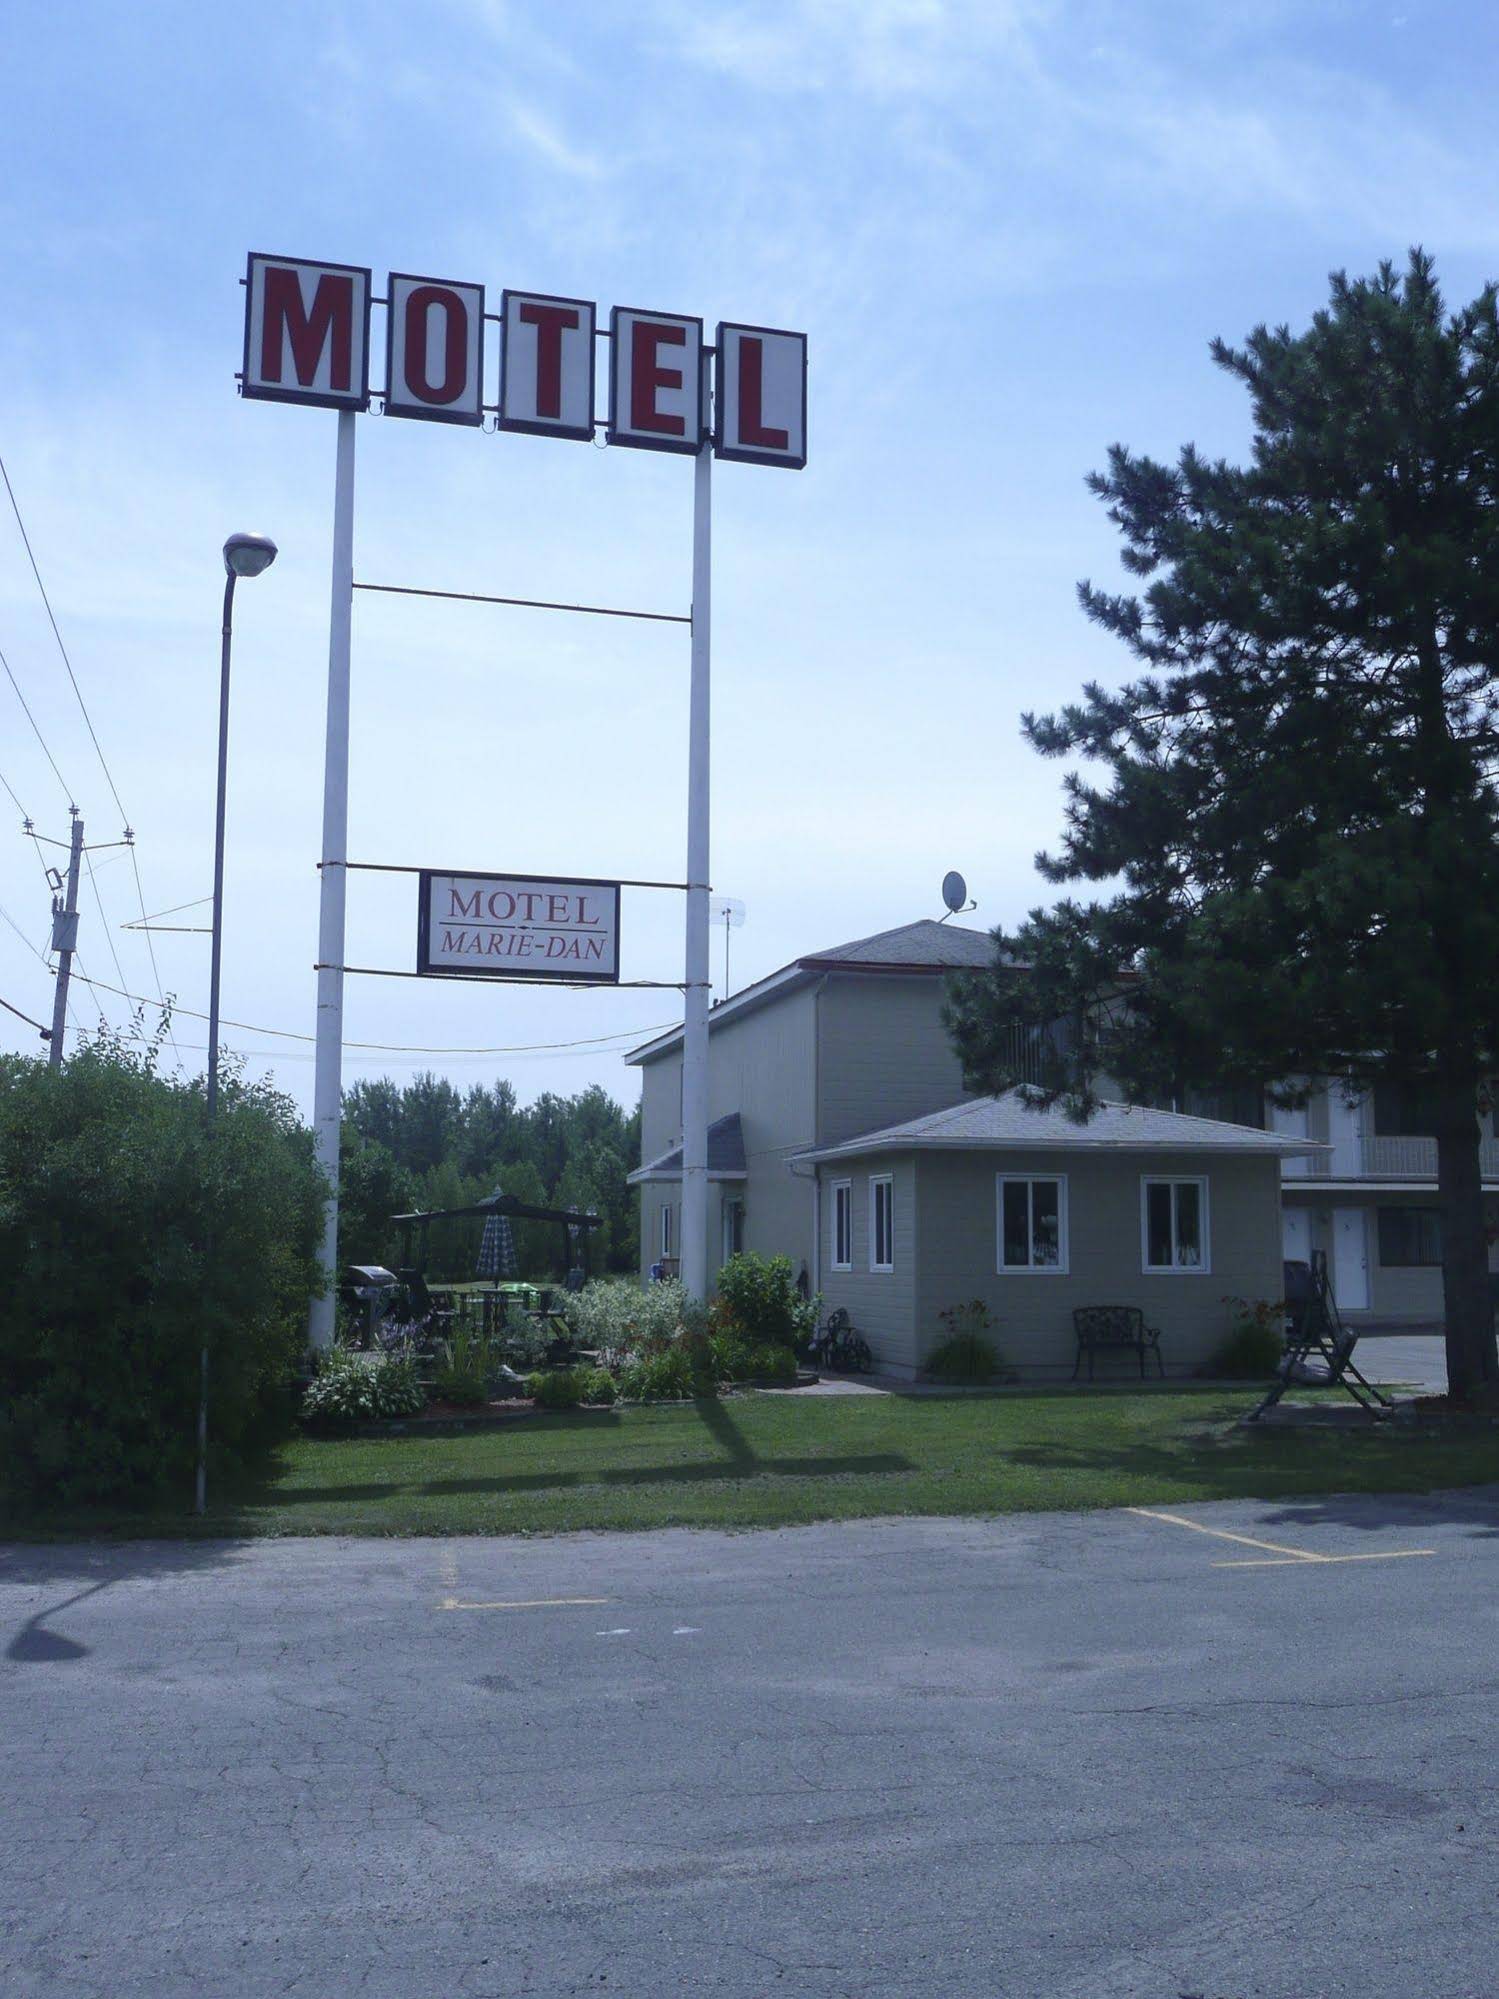 Motel Marie-Dan